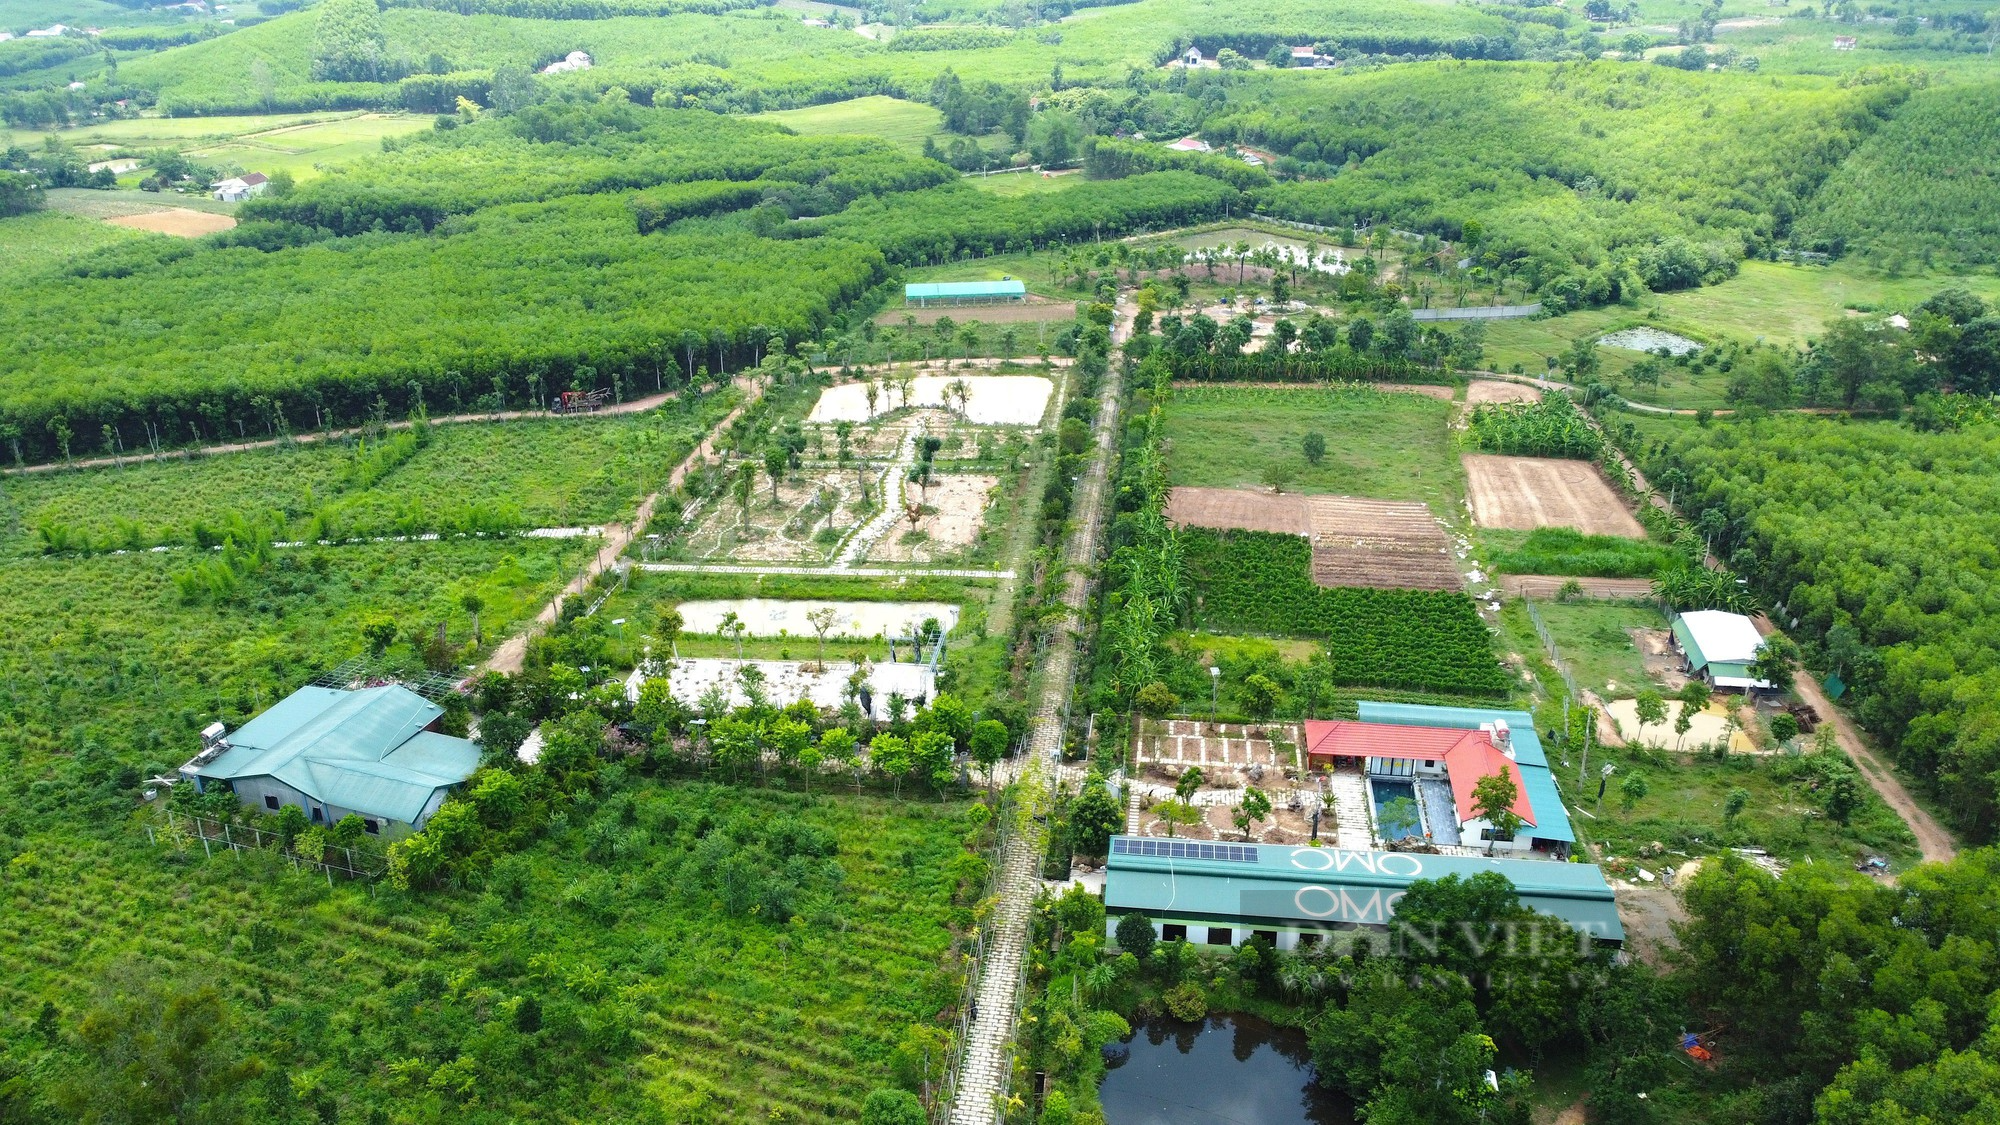 Cận cảnh khu vườn sinh thái thảo dược đẹp như tranh trên núi huyện Yên Thành - Ảnh 3.